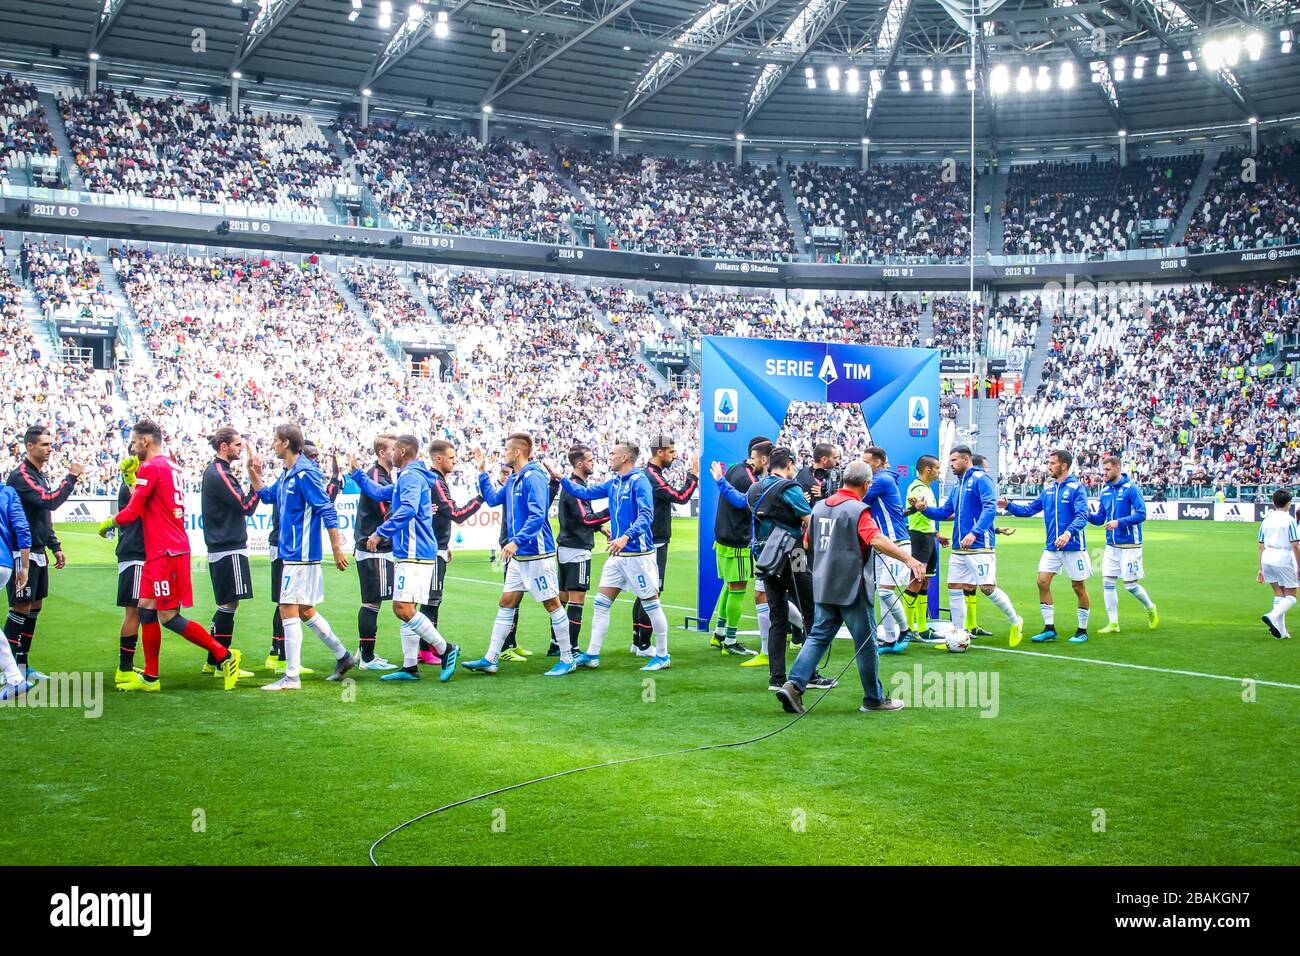 Allianz Stadium durante la temporada de fútbol 2019/20 imágenes simbólicas - crédito de la foto Fabrizio Carabelli /LM/ Foto de stock